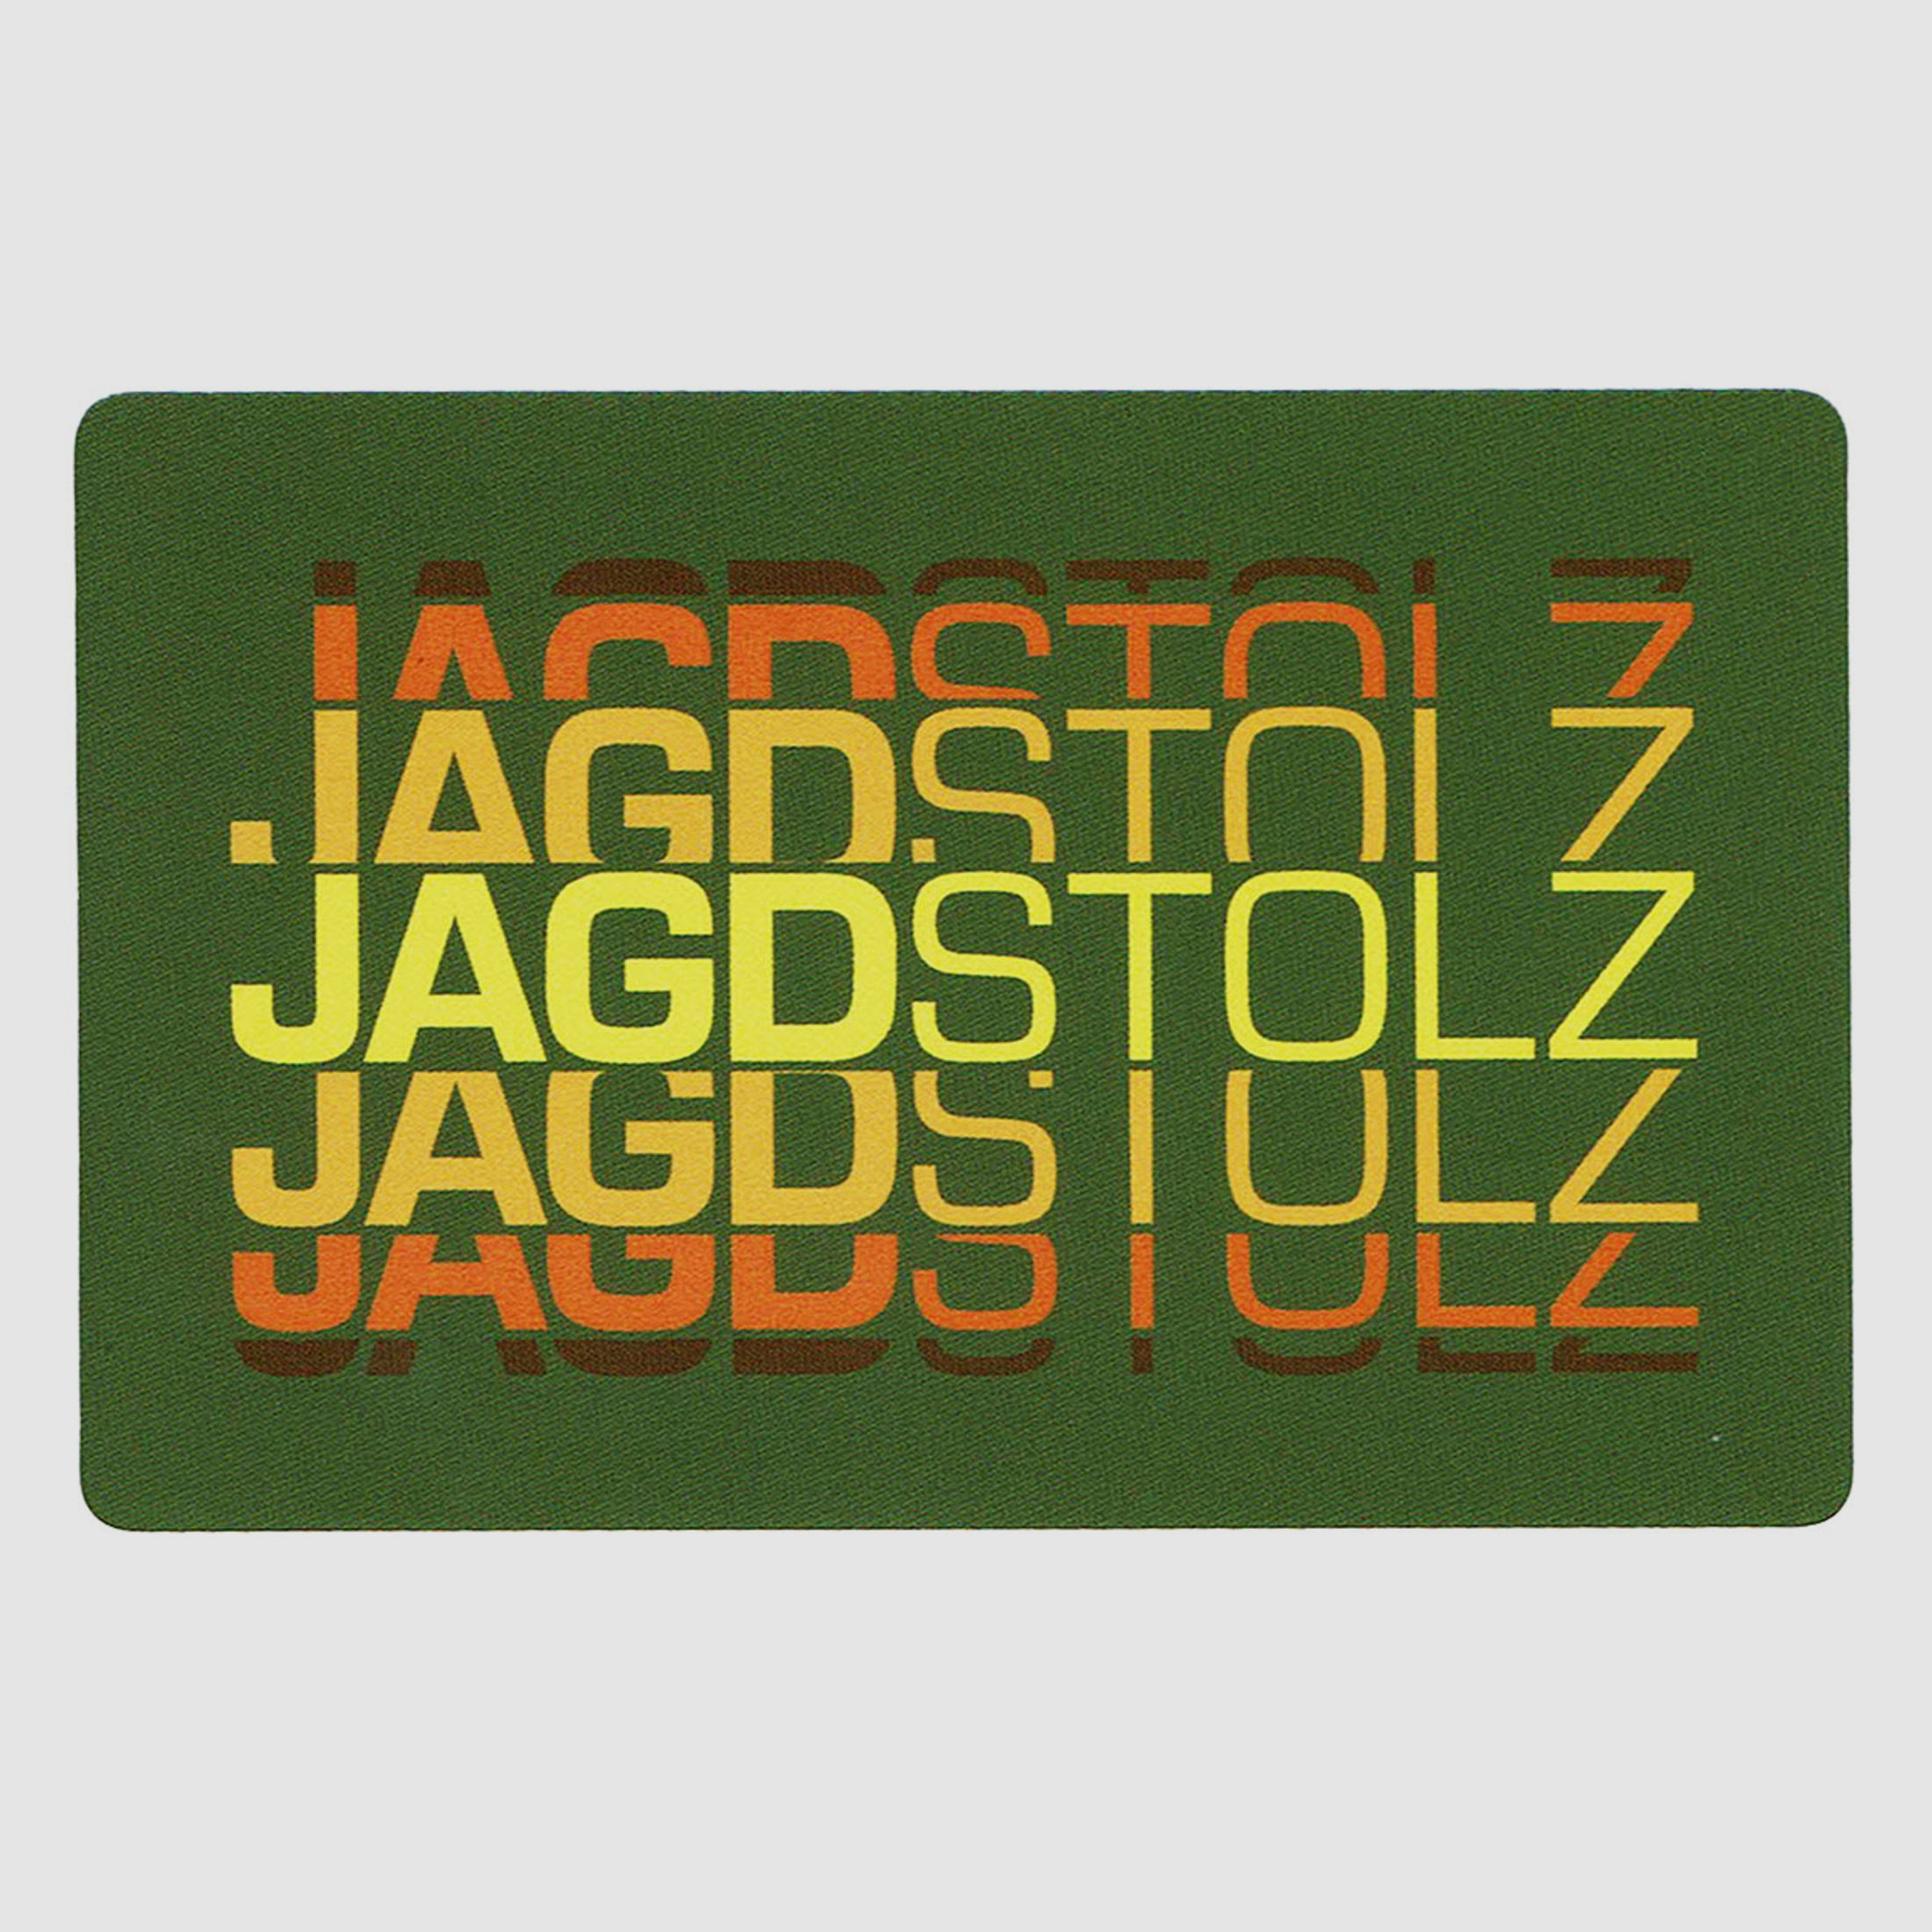 Jagdstolz Sticker Logo 80s Oliv